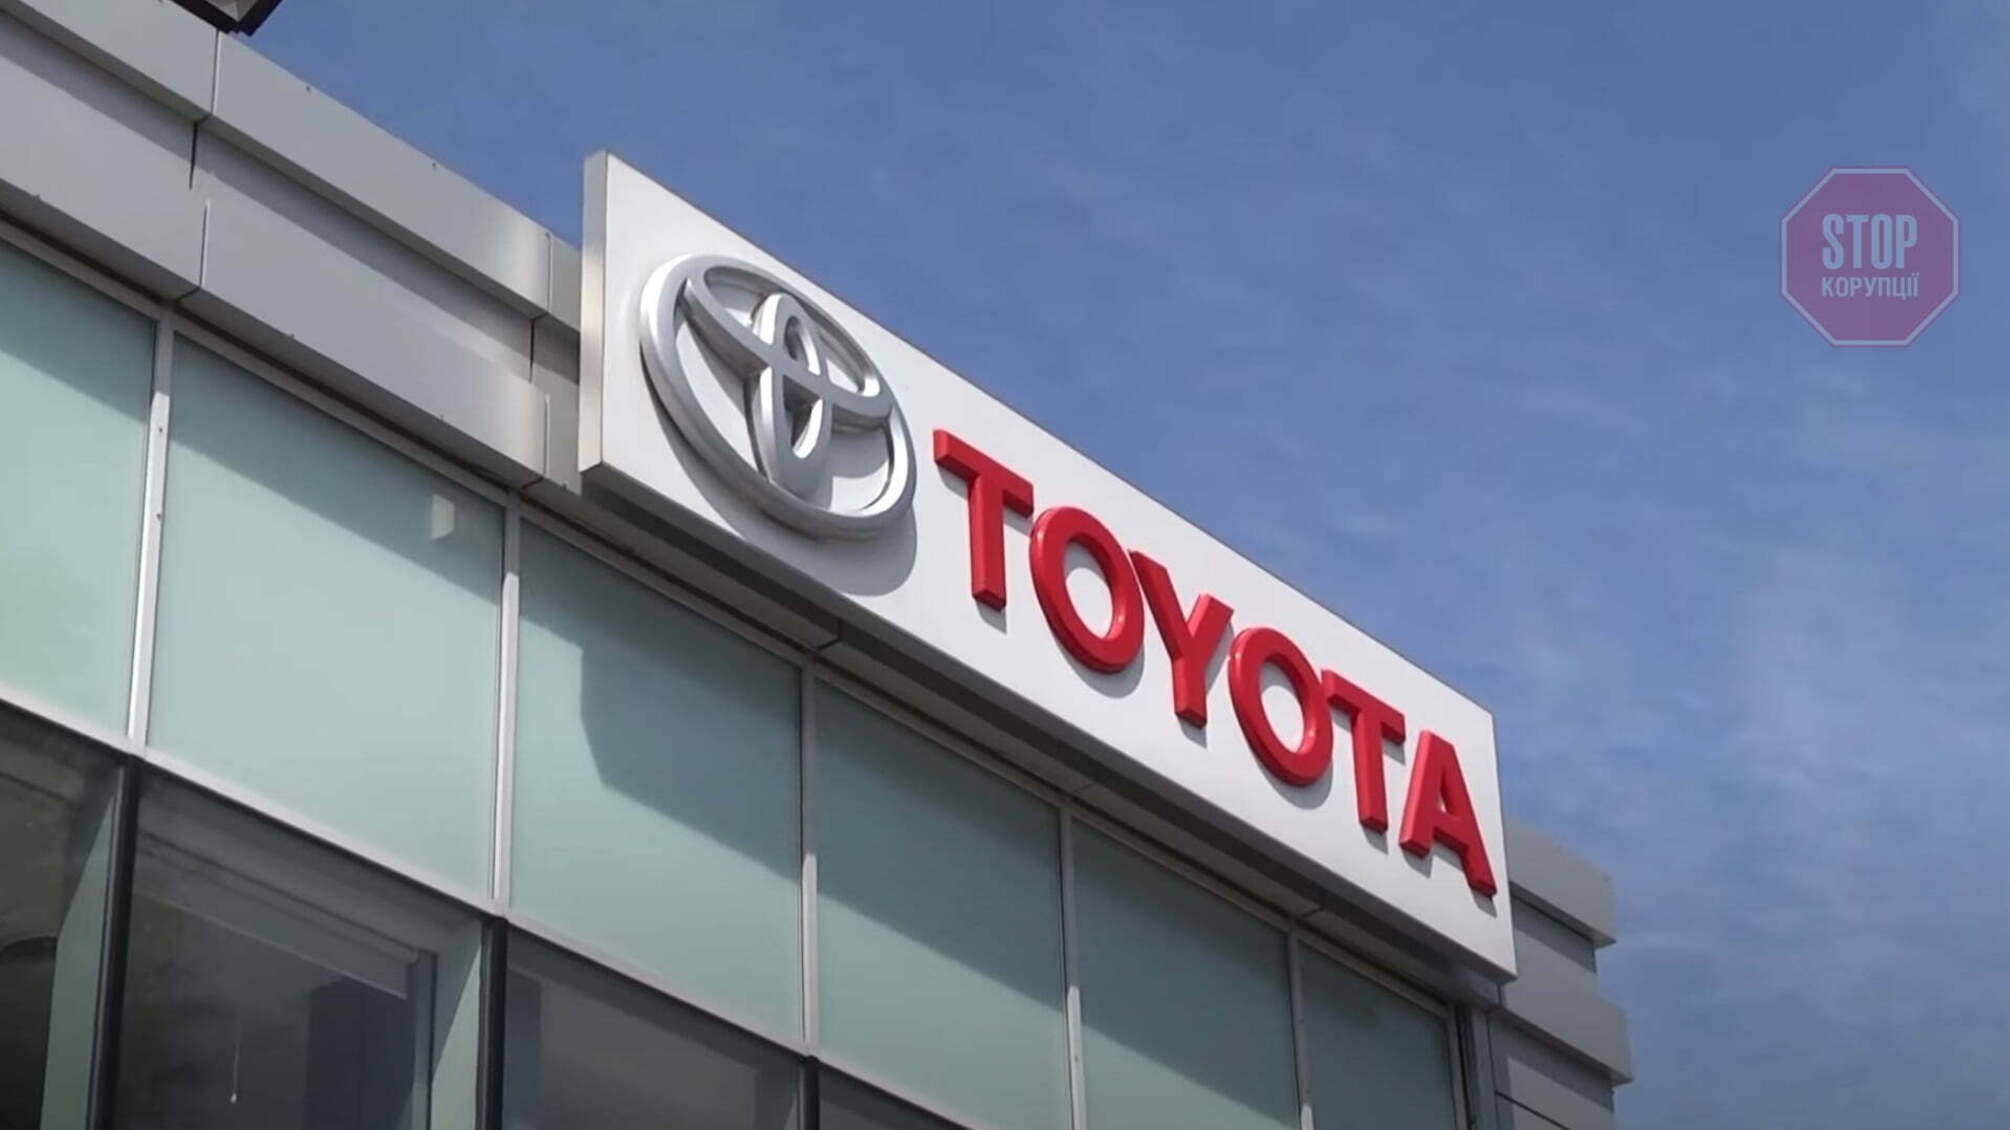 Нагрел бюджет на 32 миллиона: скандальный черниговский депутат хочет стать представителем Toyota